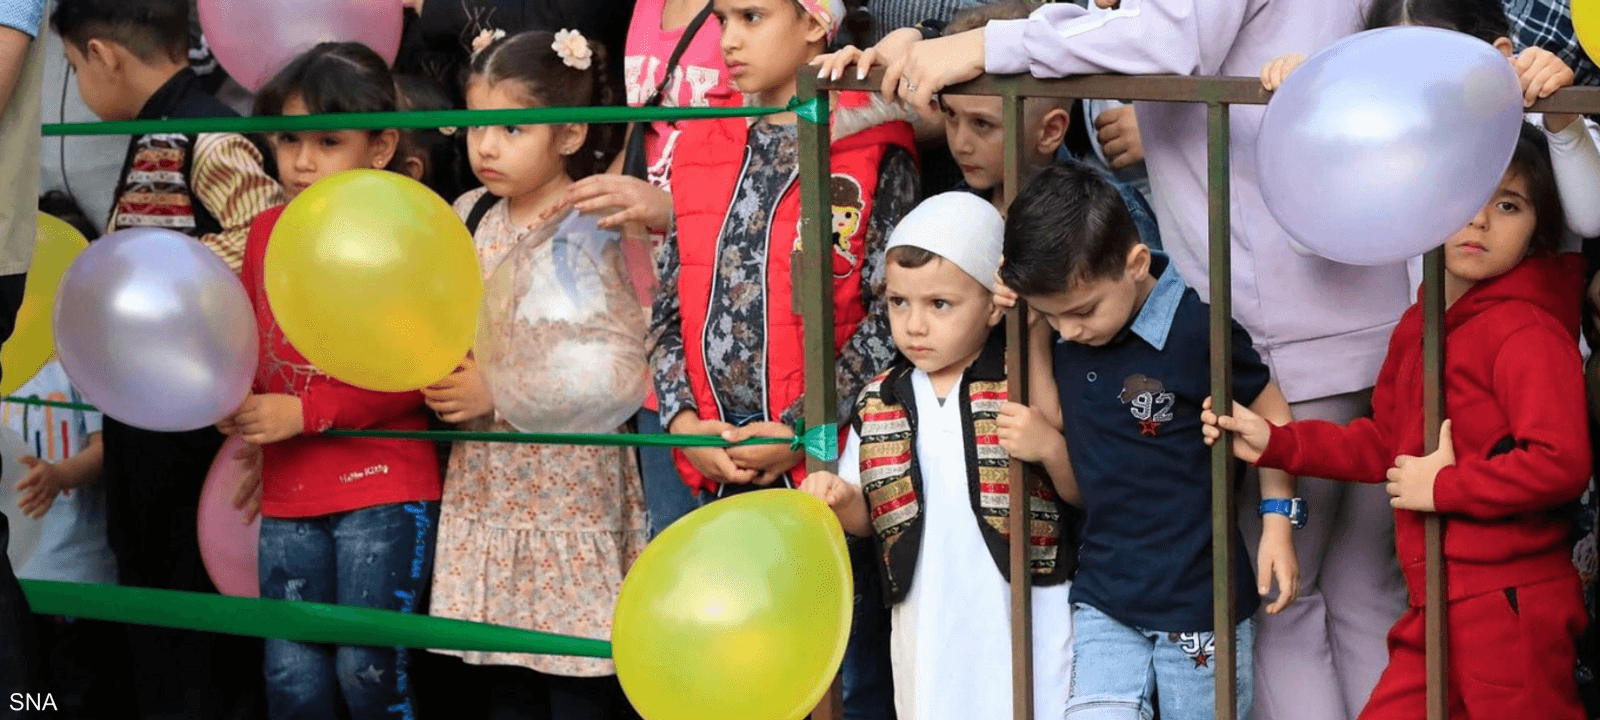 الأزمة الاقتصادية أثرت على احتفال العيد في لبنان